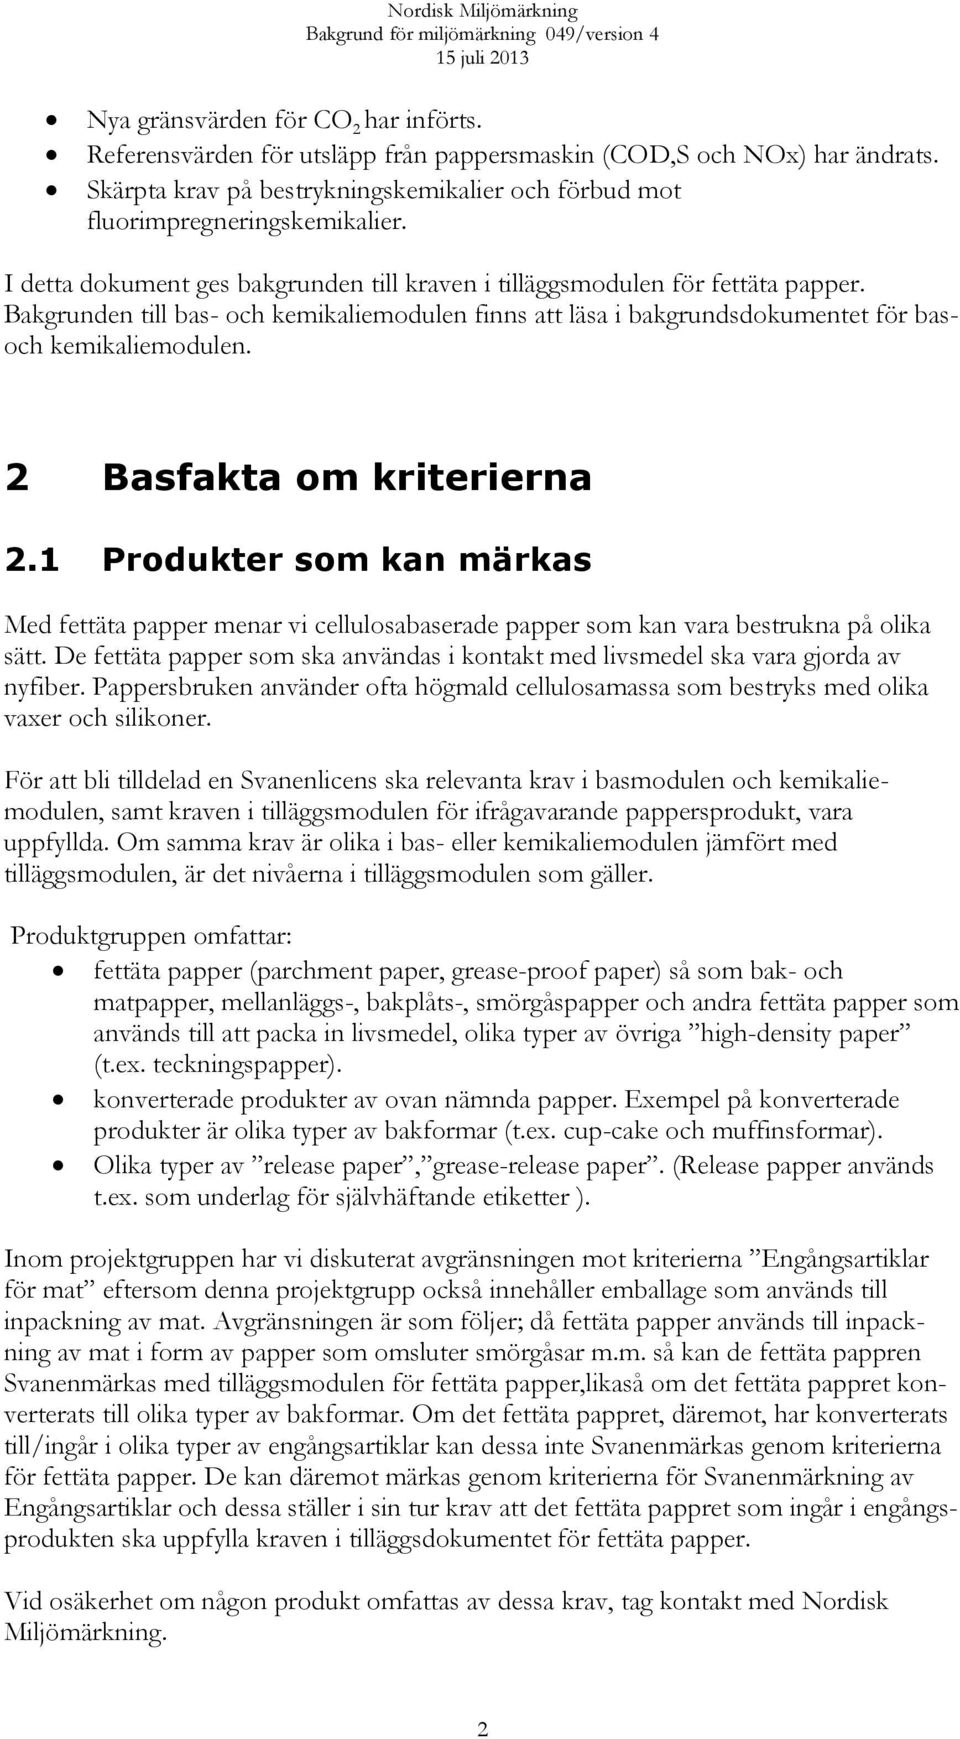 2 Basfakta om kriterierna 2.1 Produkter som kan märkas Med fettäta papper menar vi cellulosabaserade papper som kan vara bestrukna på olika sätt.